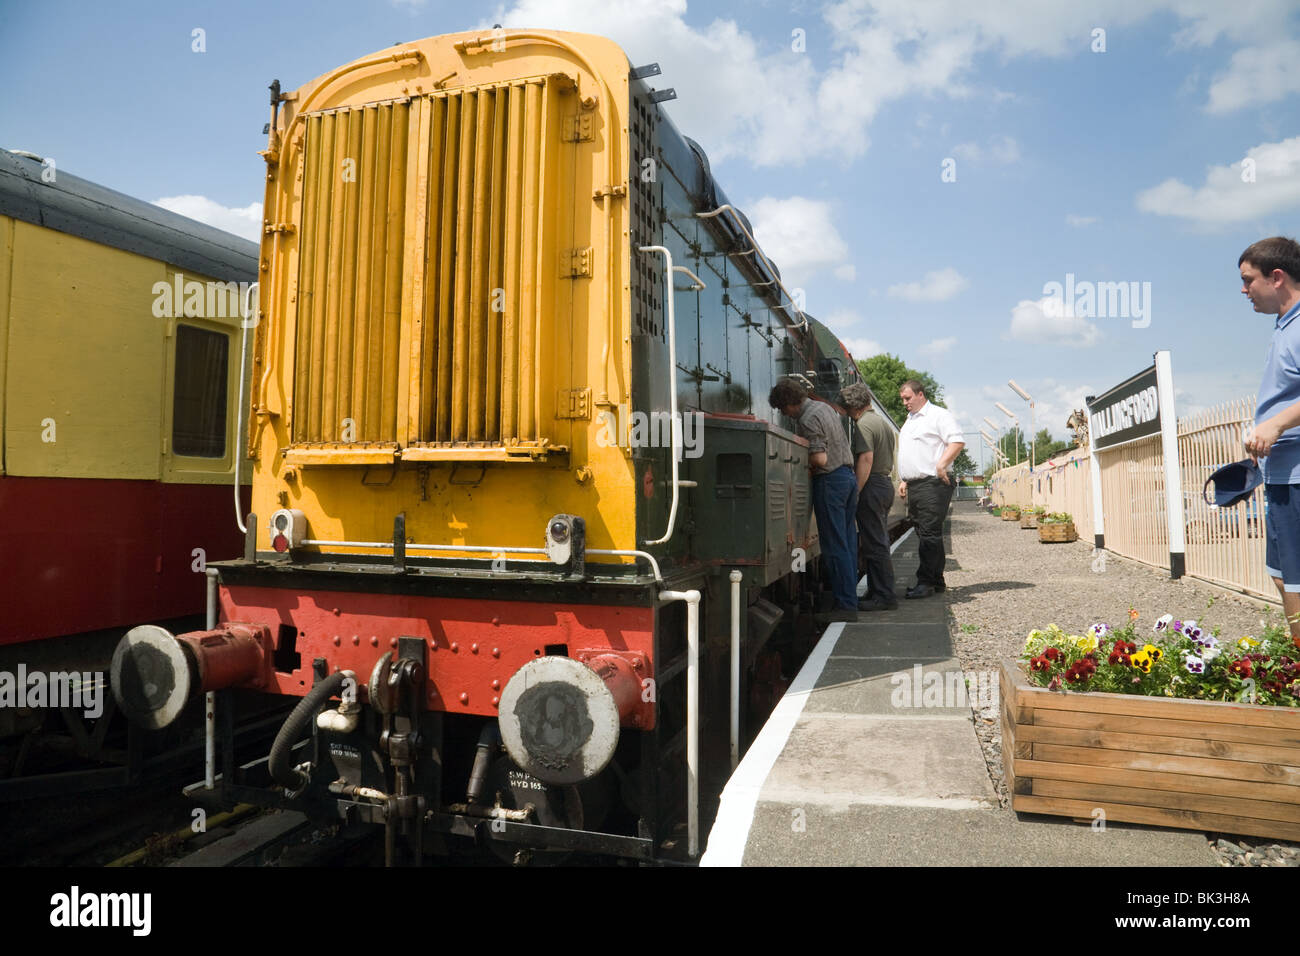 Les gens observant la classe 08 'GEORGE MASON ; la locomotive Fontenoille & Wallingford Wallingford, chemin de fer, l'Oxfordshire, UK Banque D'Images